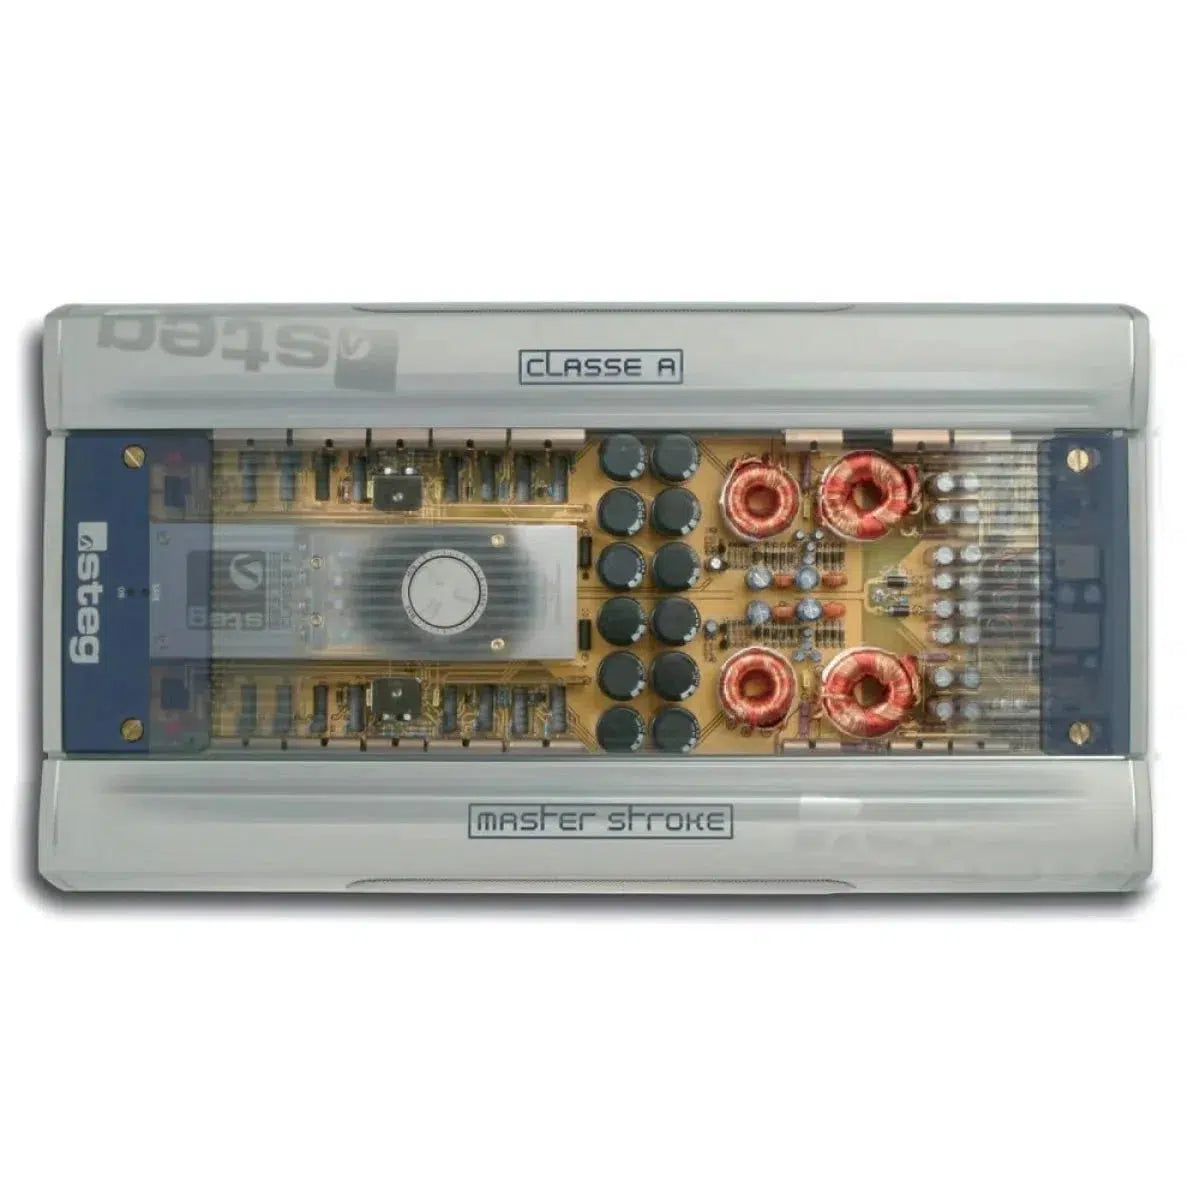 Bridge-Masterstroke MSK Class A-2-Channel Amplifier-Masori.de